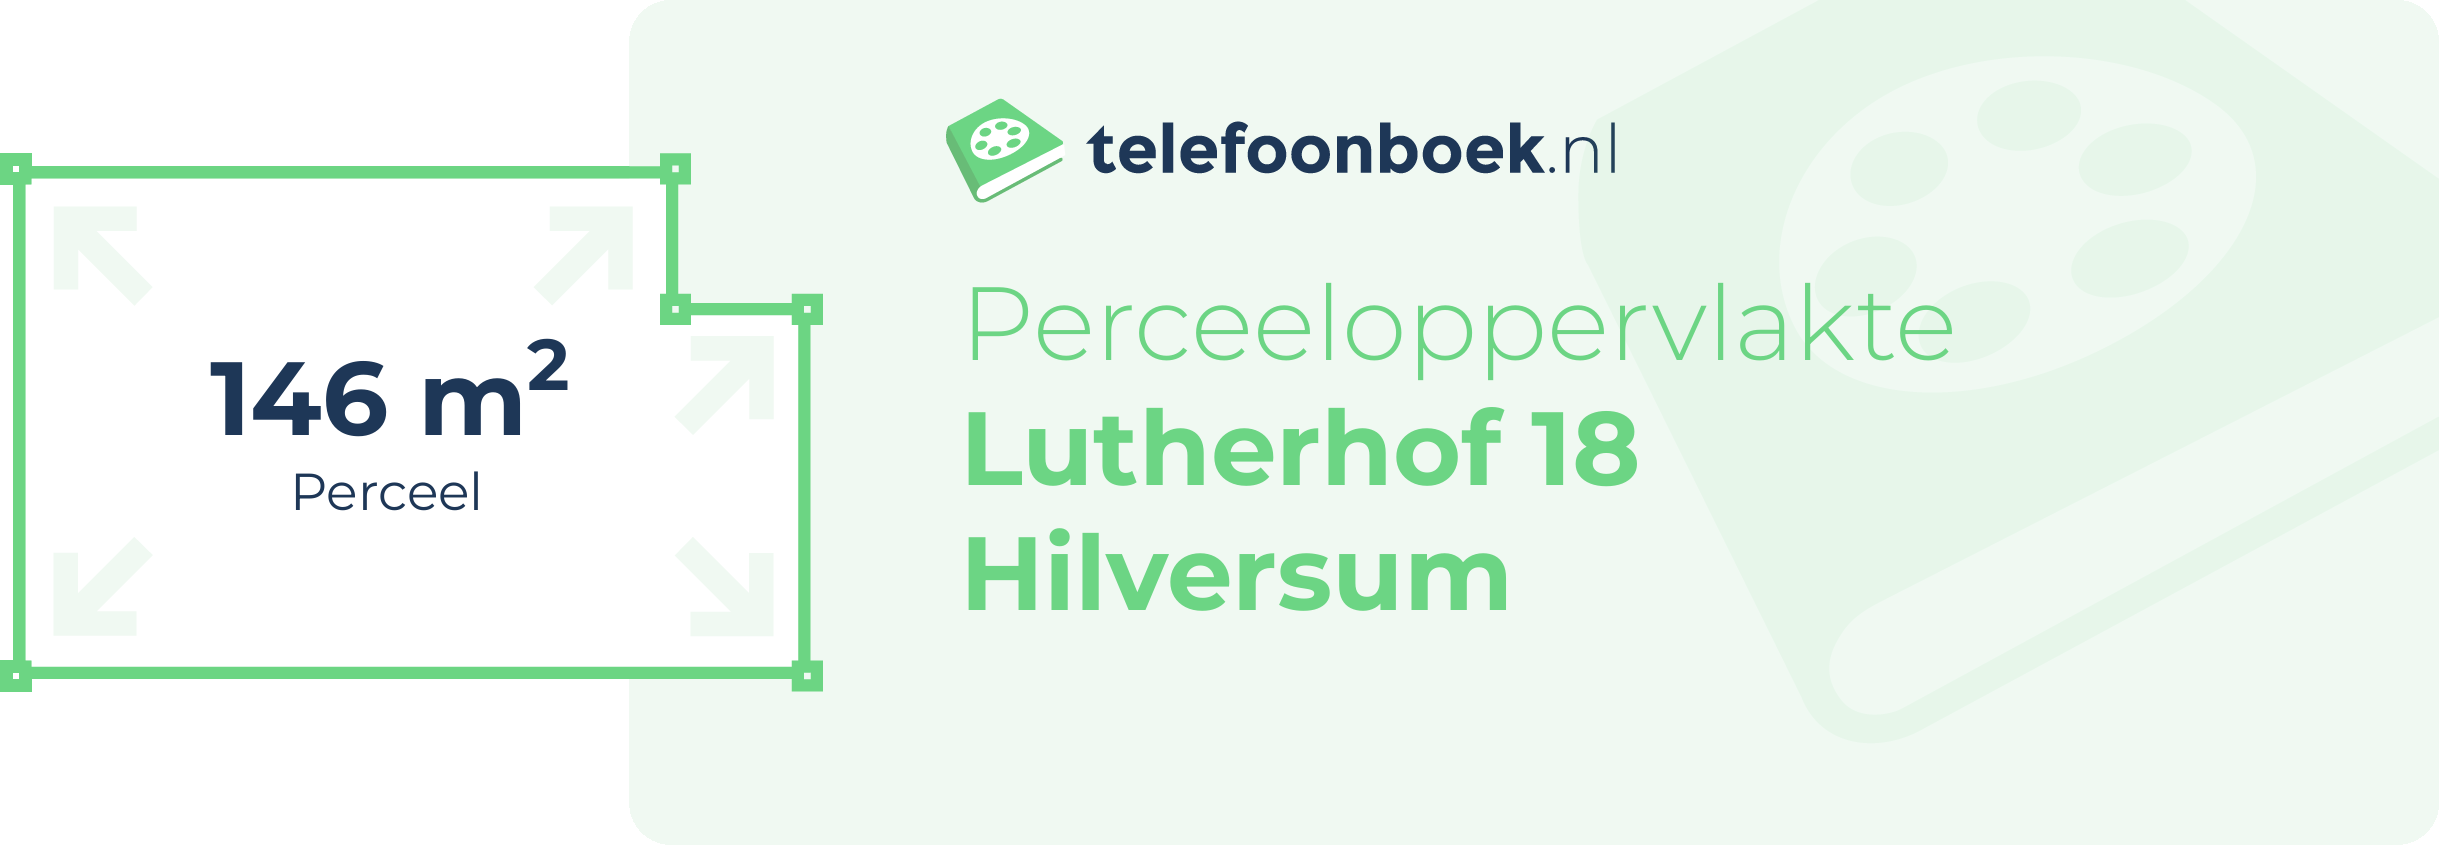 Perceeloppervlakte Lutherhof 18 Hilversum